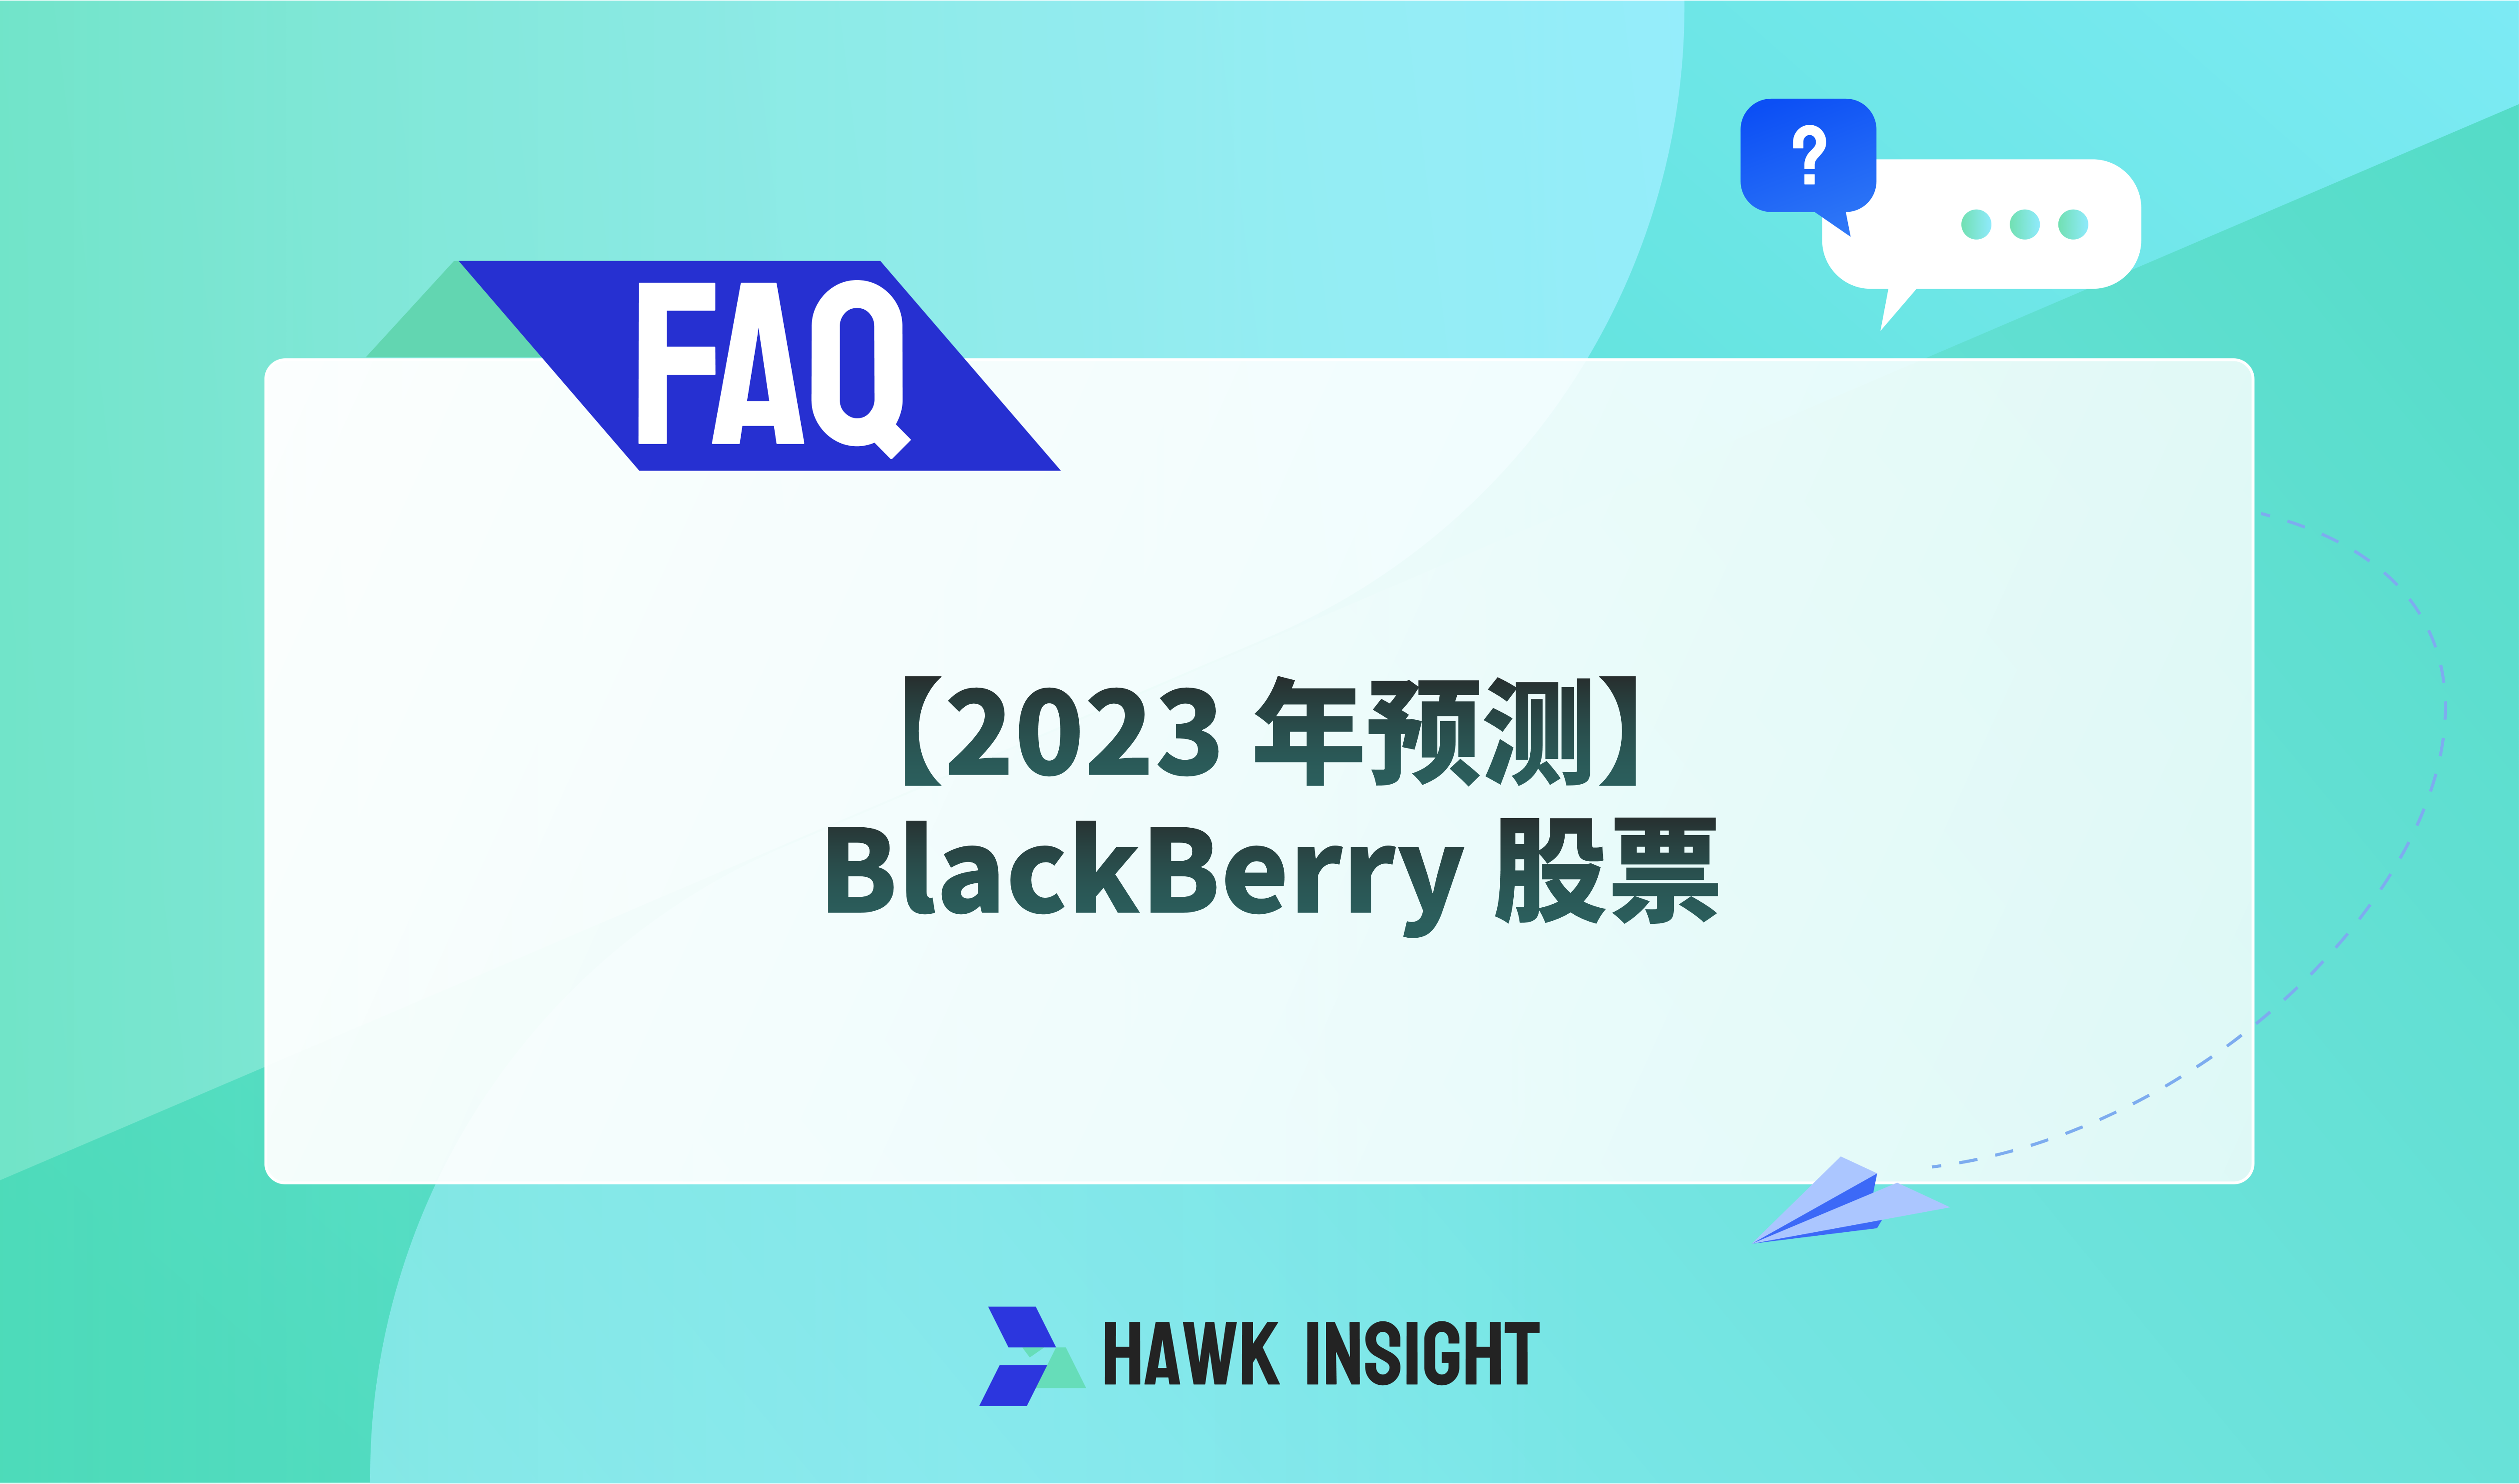 [2023 Forecast] BlackBerry Stock